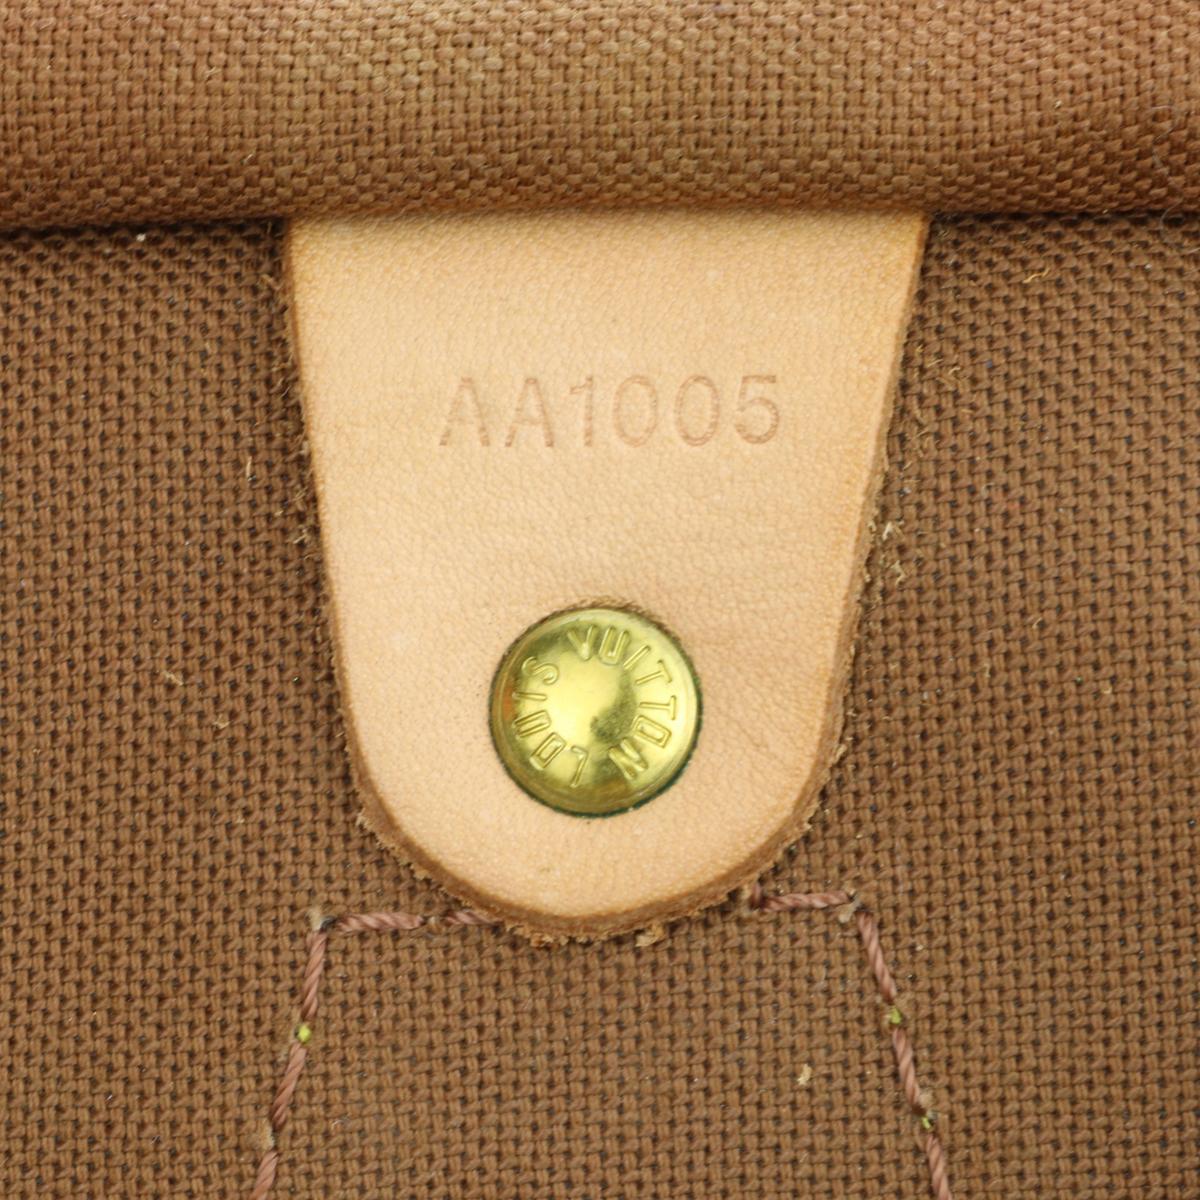 Louis Vuitton Speedy 35 Bag in Monogram 2005 13